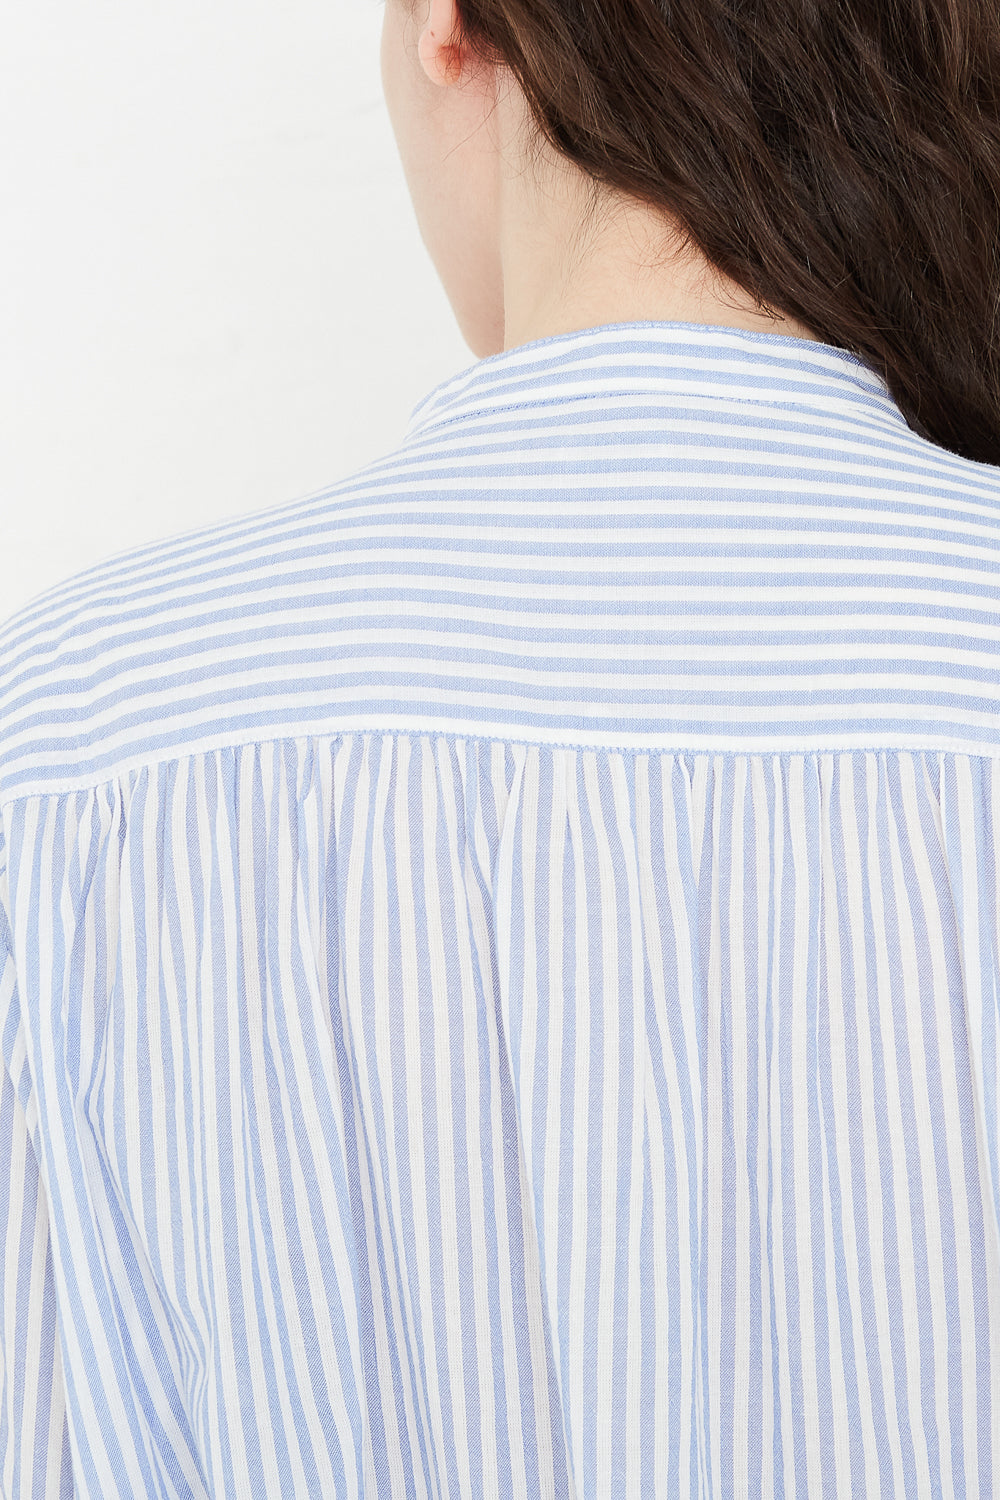 Cotton Stripe Dress in Light Blue back yoke detail